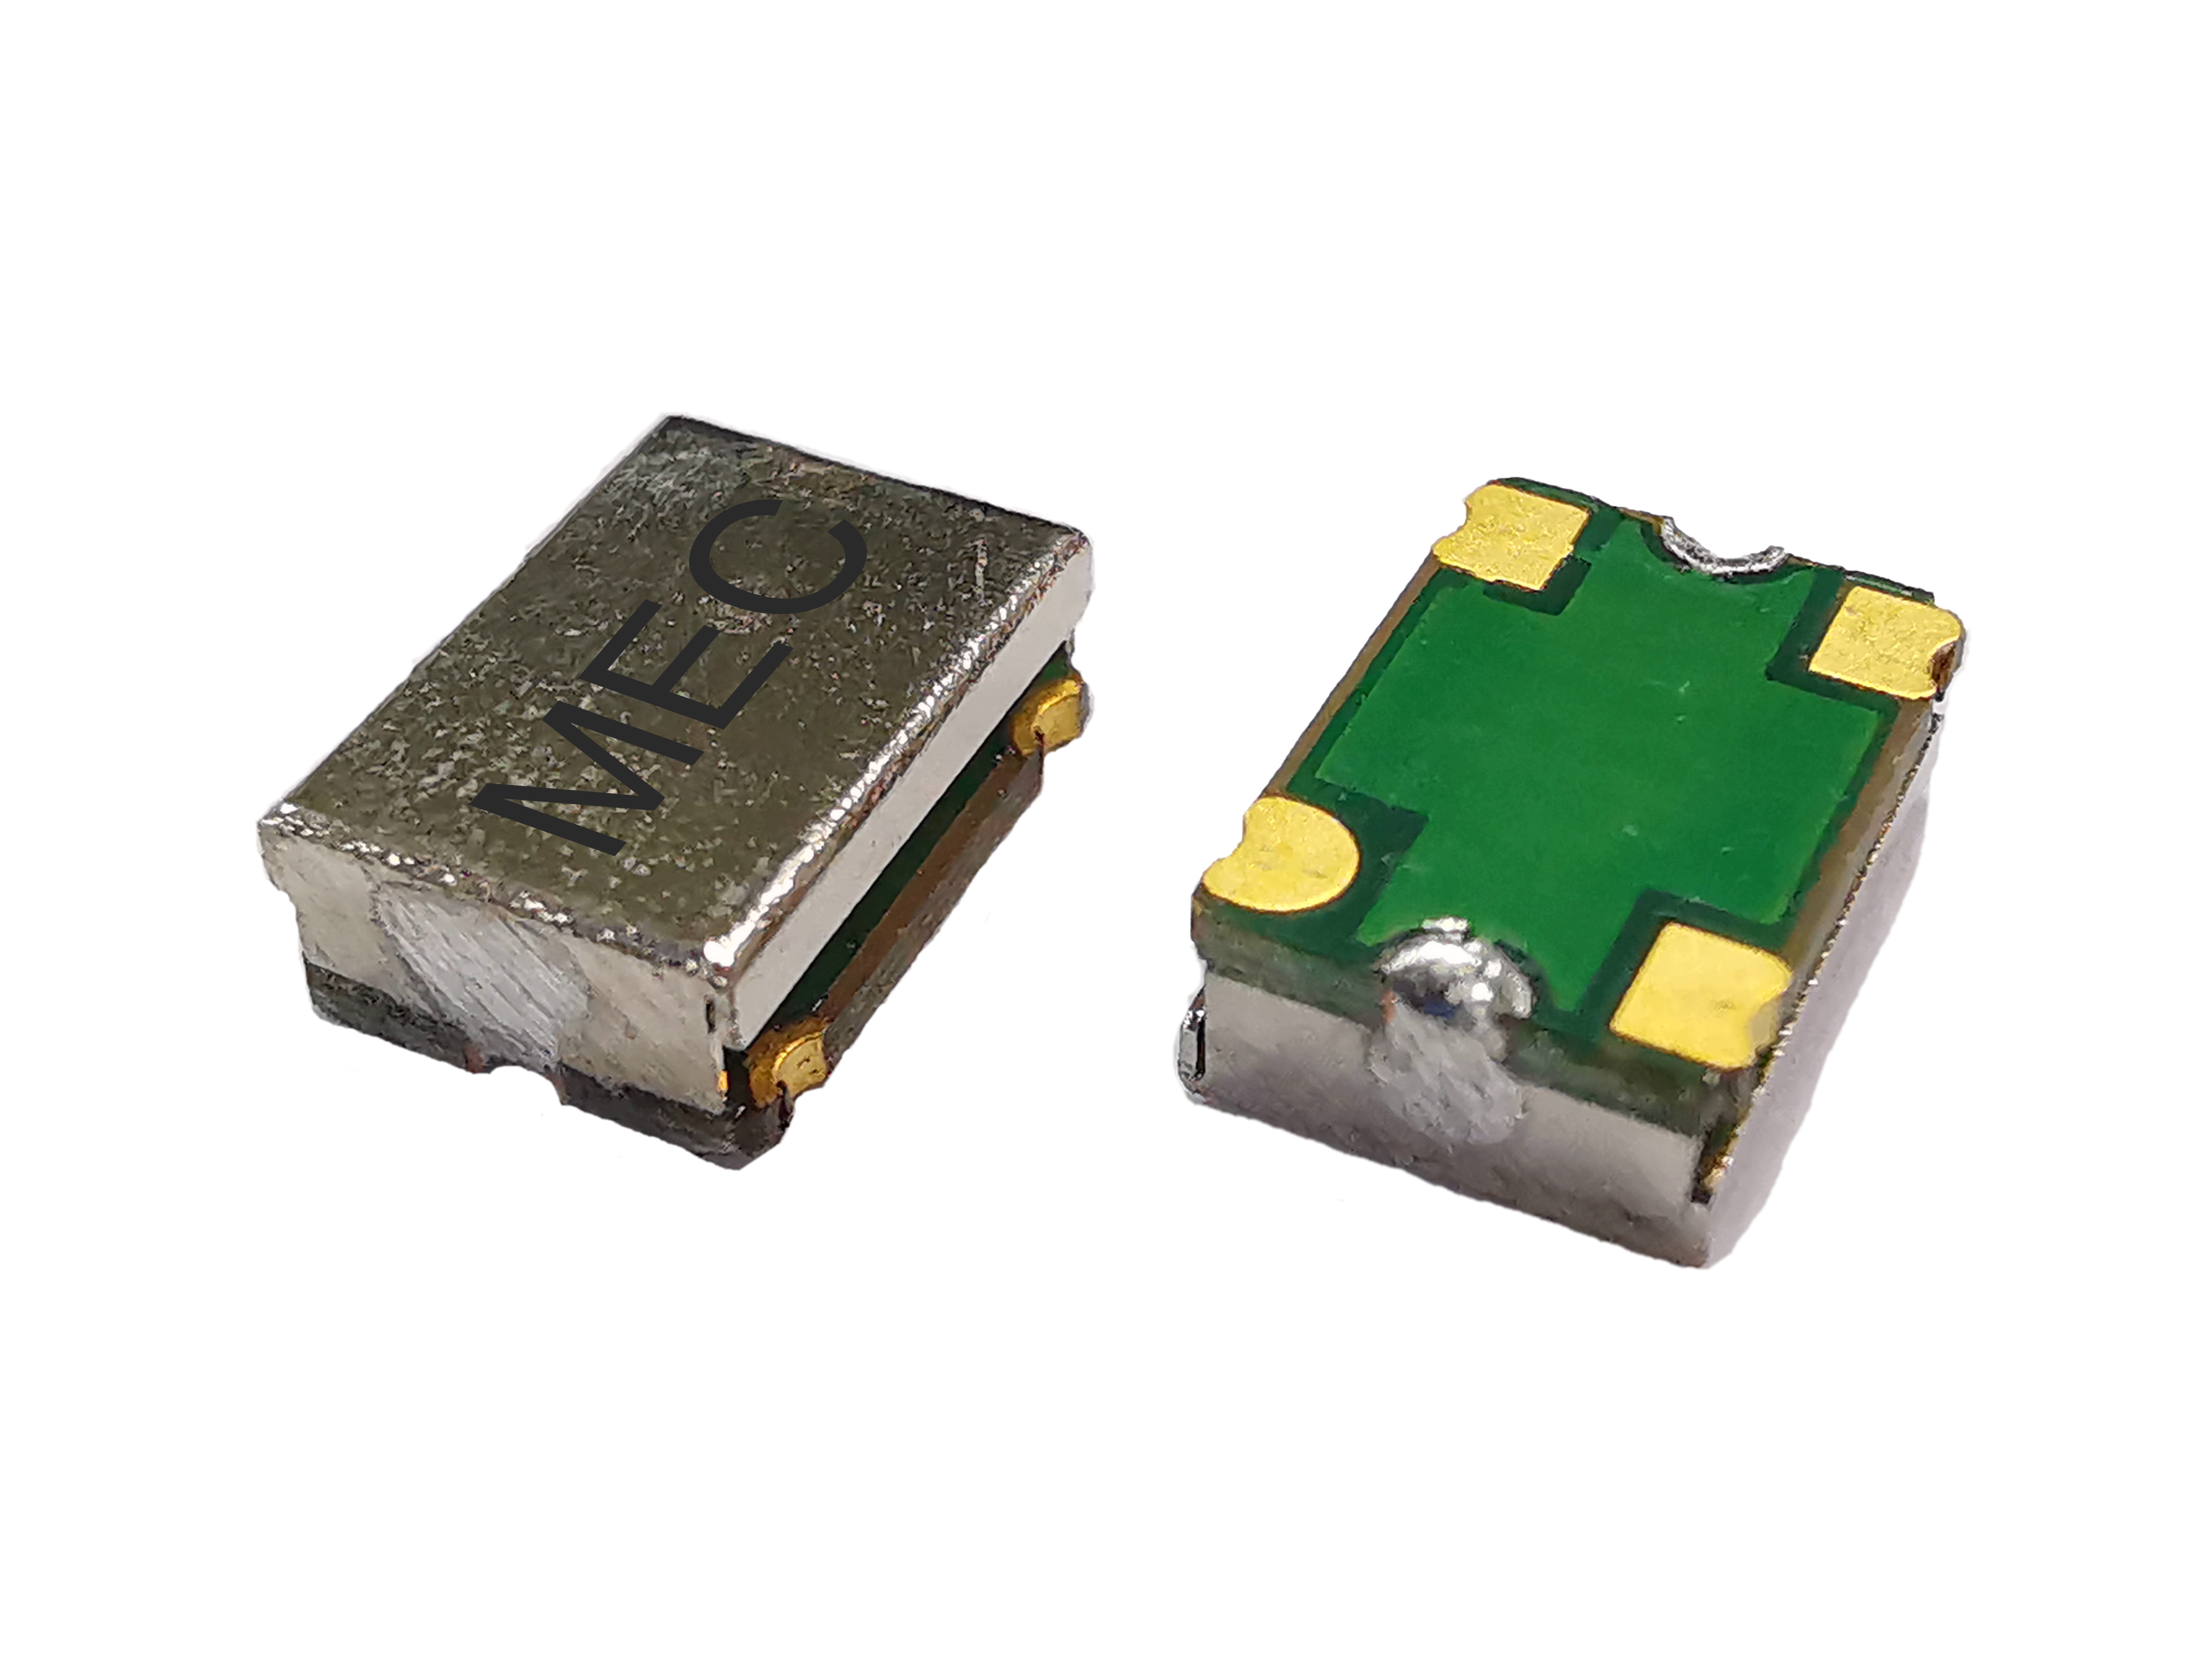 (V)MQN574T 7050 2.5V Low Jitter CMOS SMD Temperature Compensated Crystal Oscillator